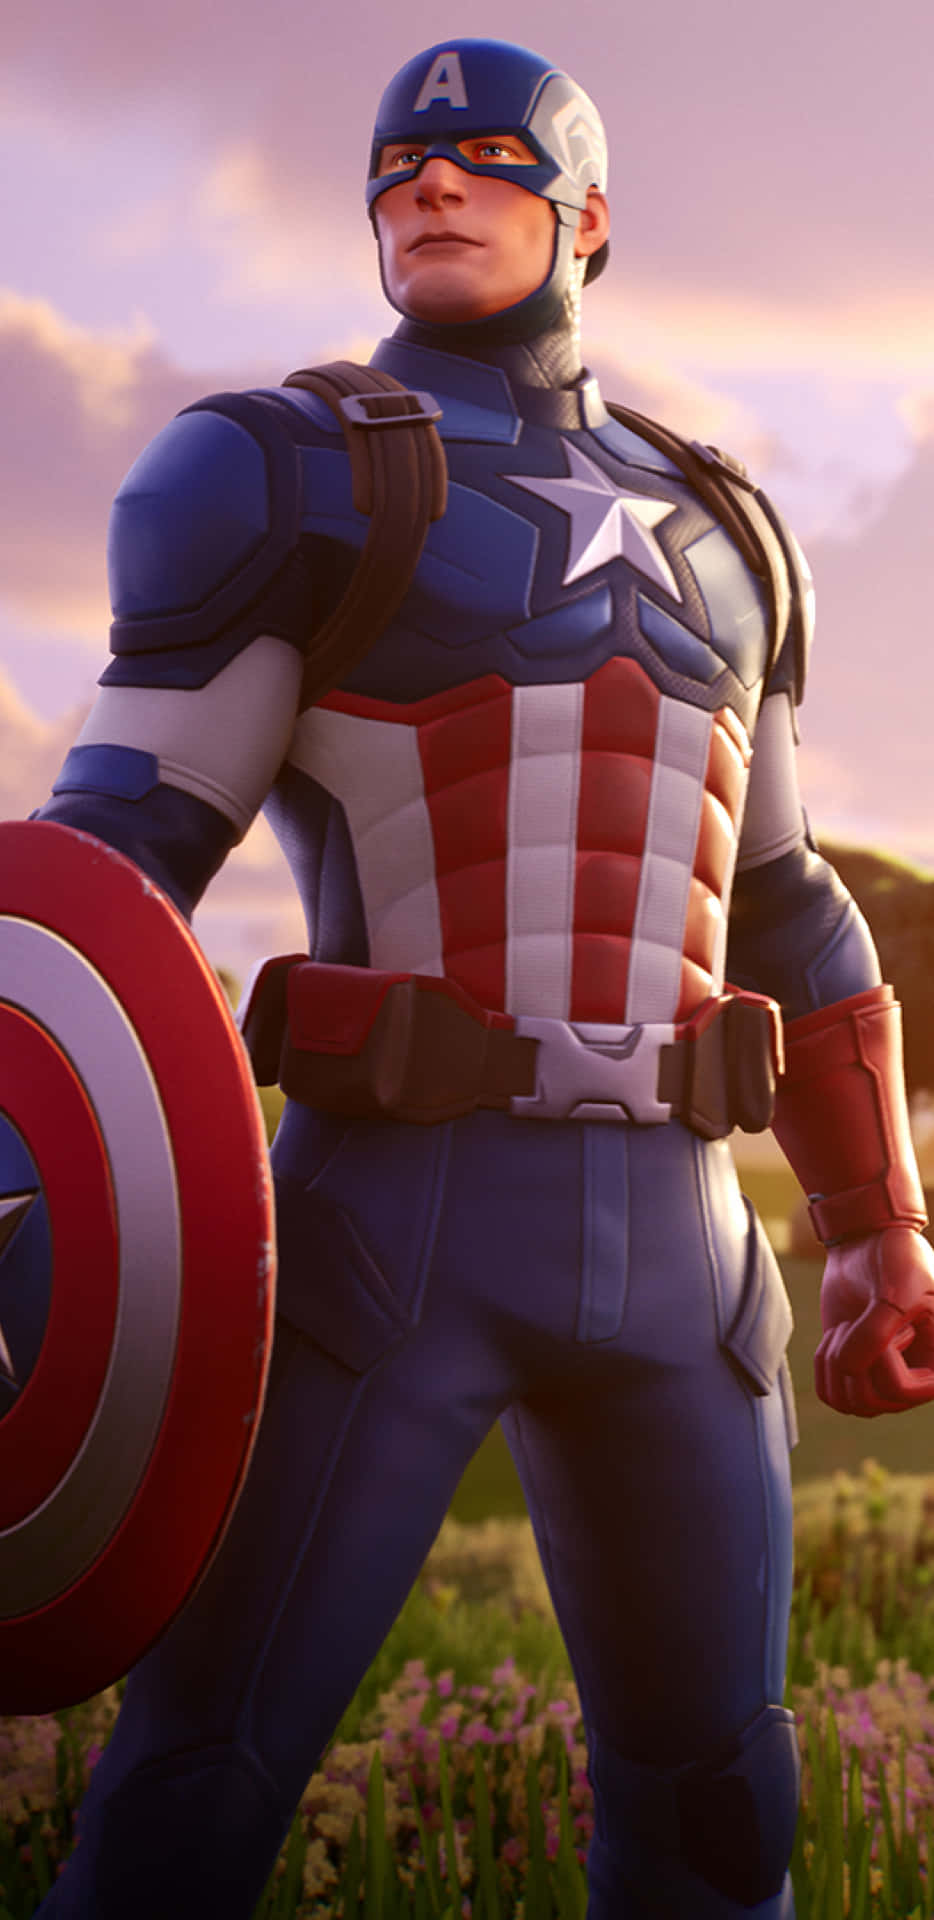 Pixel3xl Bakgrundsbild Med Captain America Fortnite Skin.